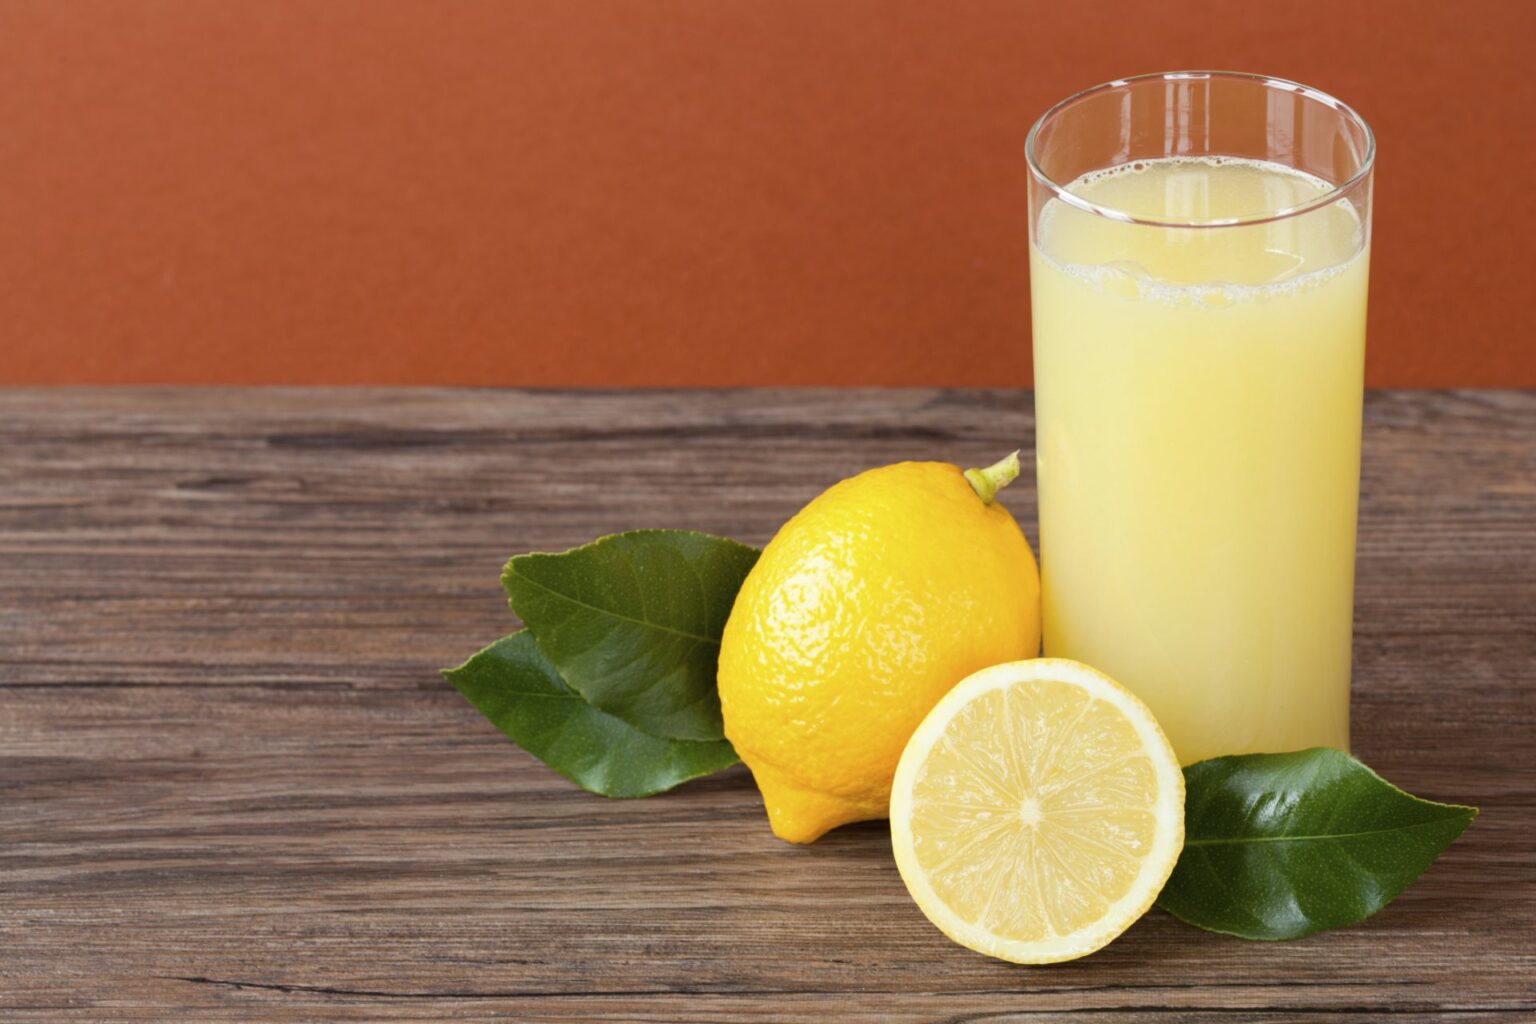 كوب واحد في الصباح يصنع المعجزات.. فوائد لا تعد ولا تحصى لشرب عصير الليمون على الريق